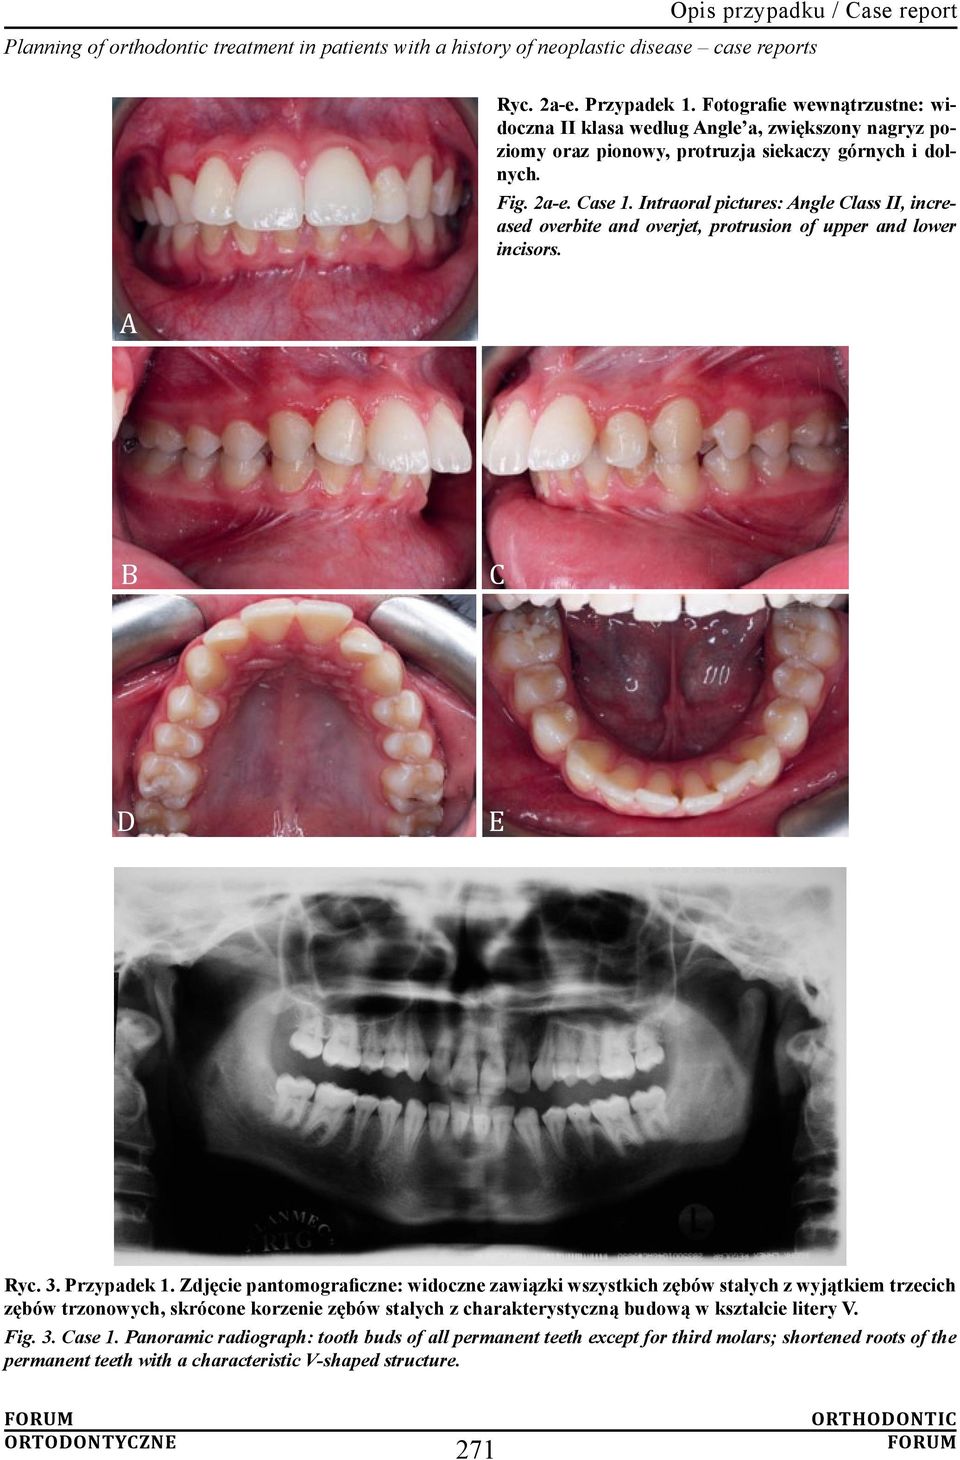 Zdjęcie pantomograficzne: widoczne zawiązki wszystkich zębów stałych z wyjątkiem trzecich zębów trzonowych, skrócone korzenie zębów stałych z charakterystyczną budową w